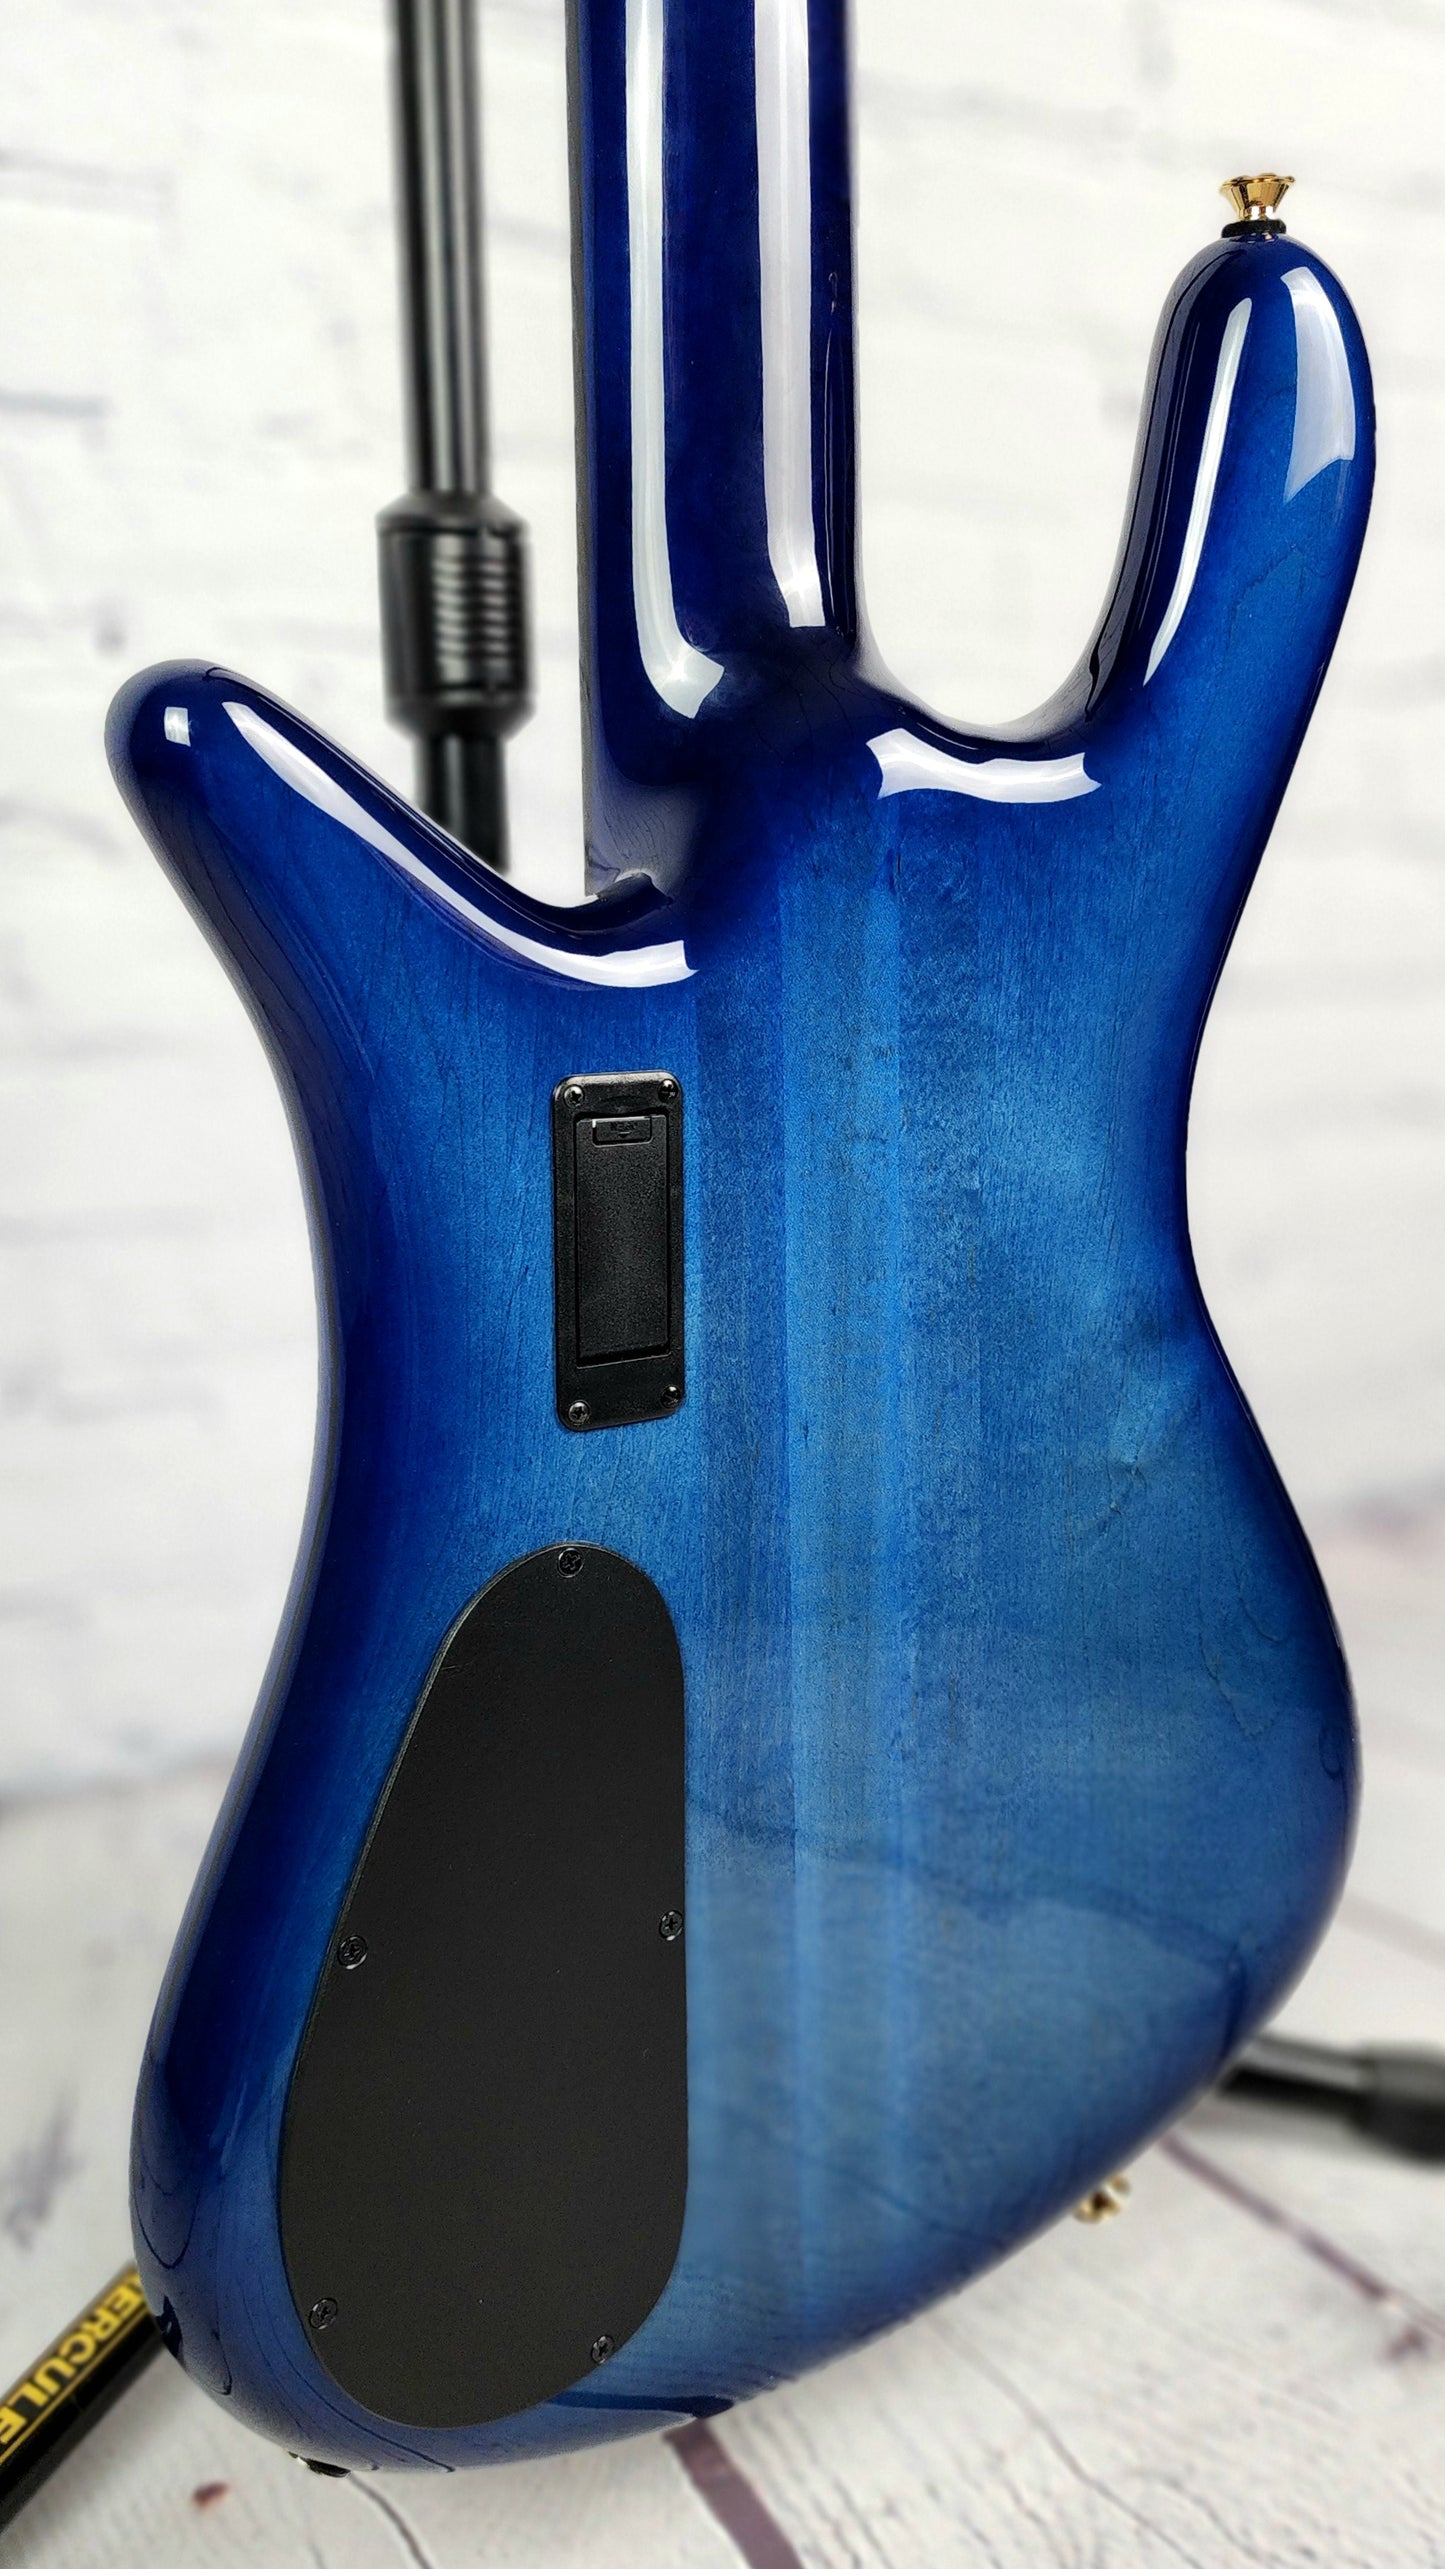 Spector Euro 5 LT 5 String Bass Blue Fade Gloss